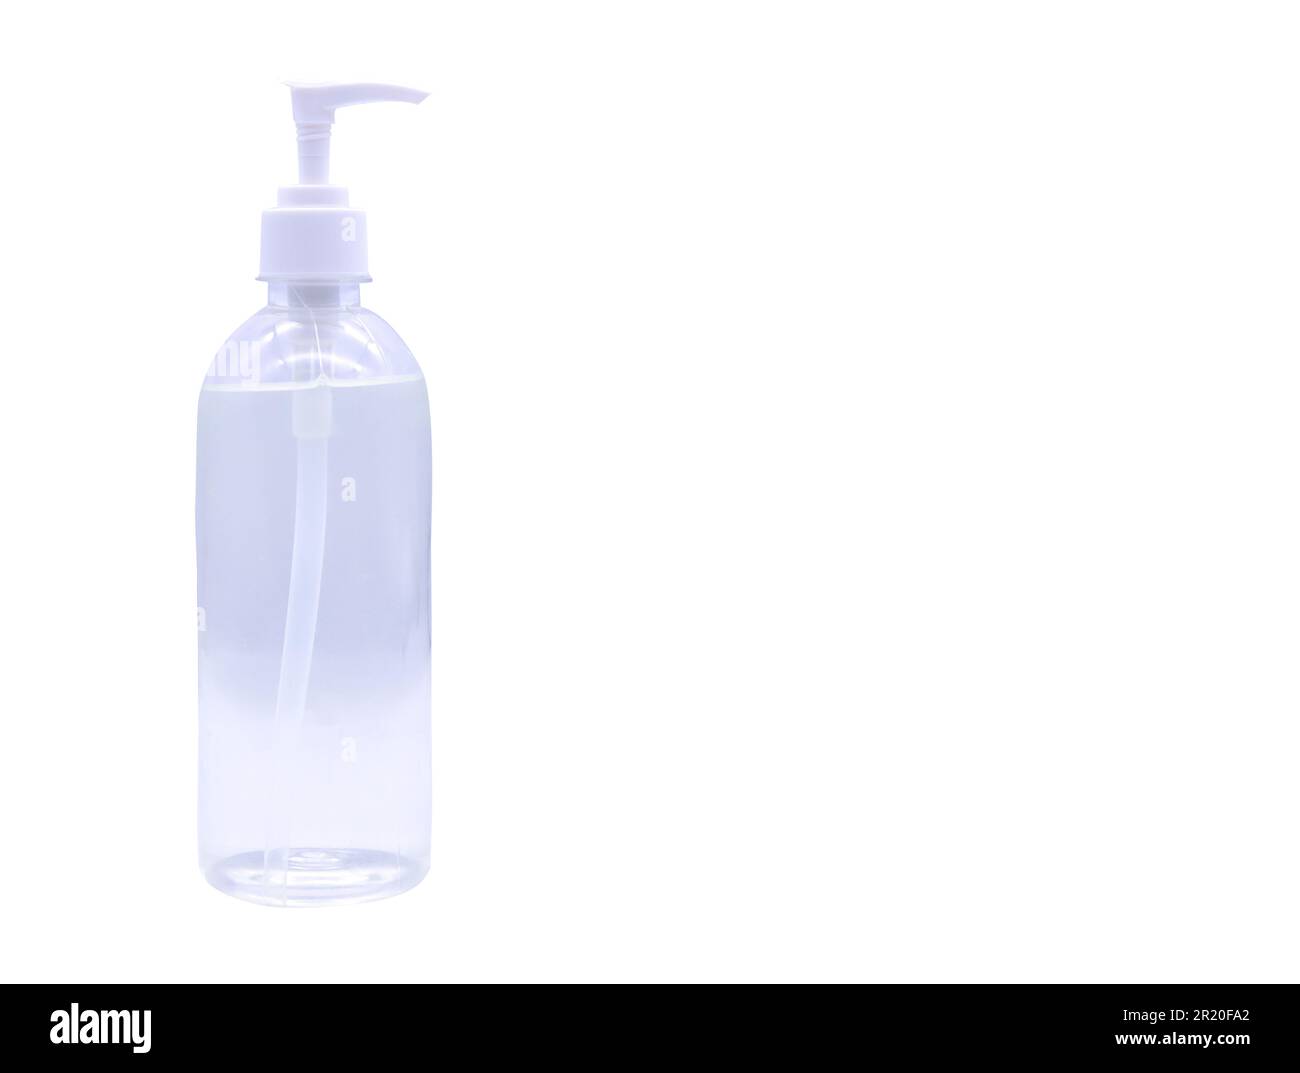 Coronavirus desinfectante de manos gel desinfectante para manos limpias a la prevención COVID 2019 alcohol gel botella de plástico para lavar la mano con ruta de recorte en blanco Foto de stock